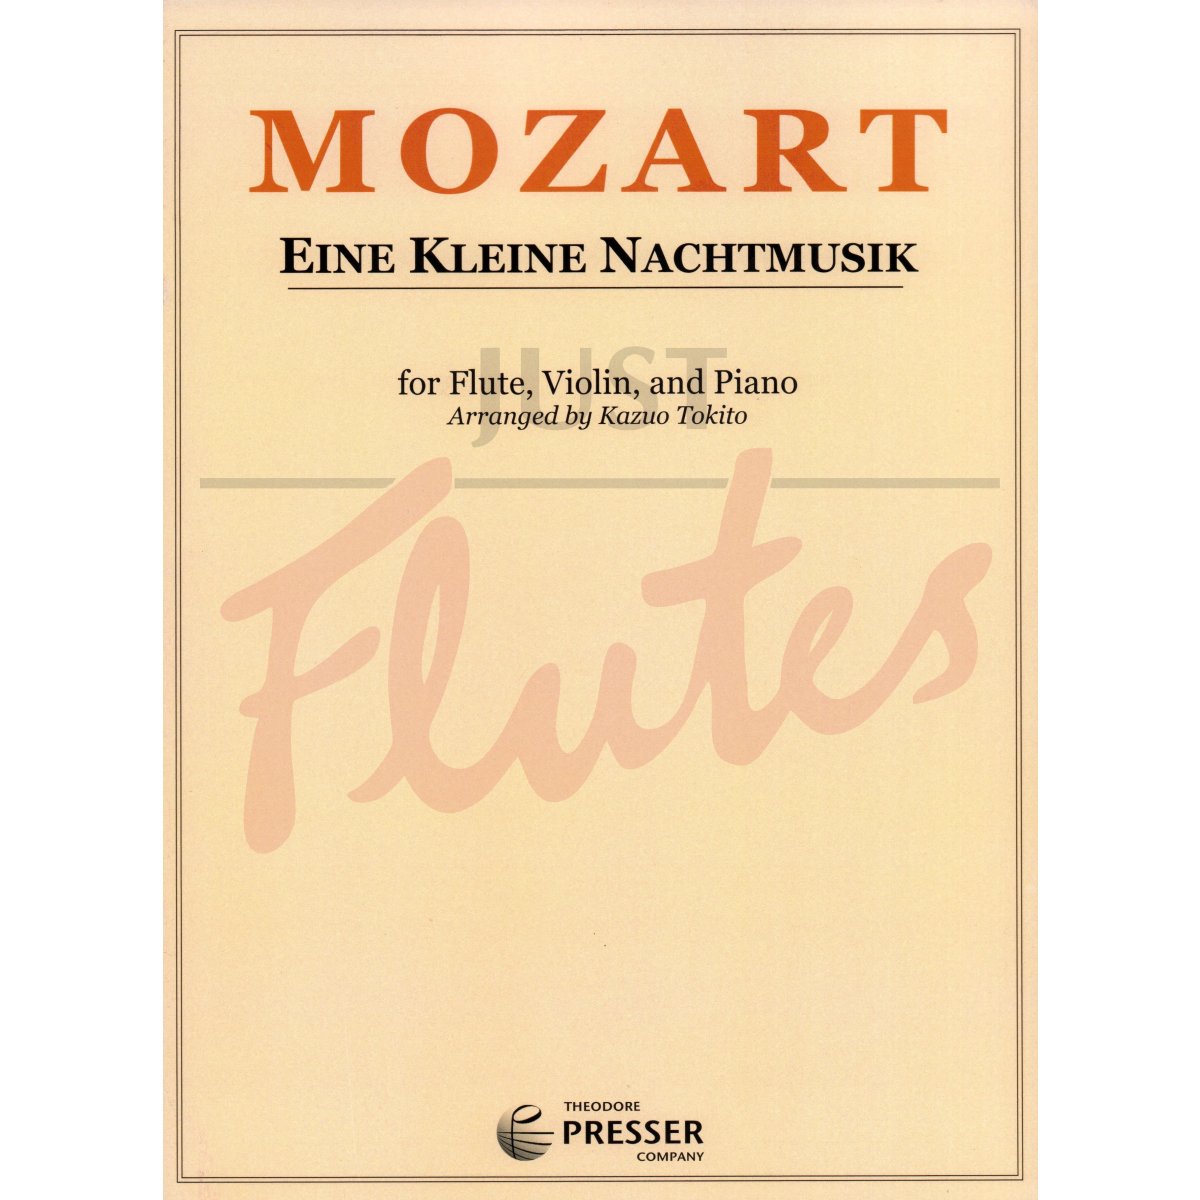 Eine Kleine Nachtmusik for Flute, Violin and Piano